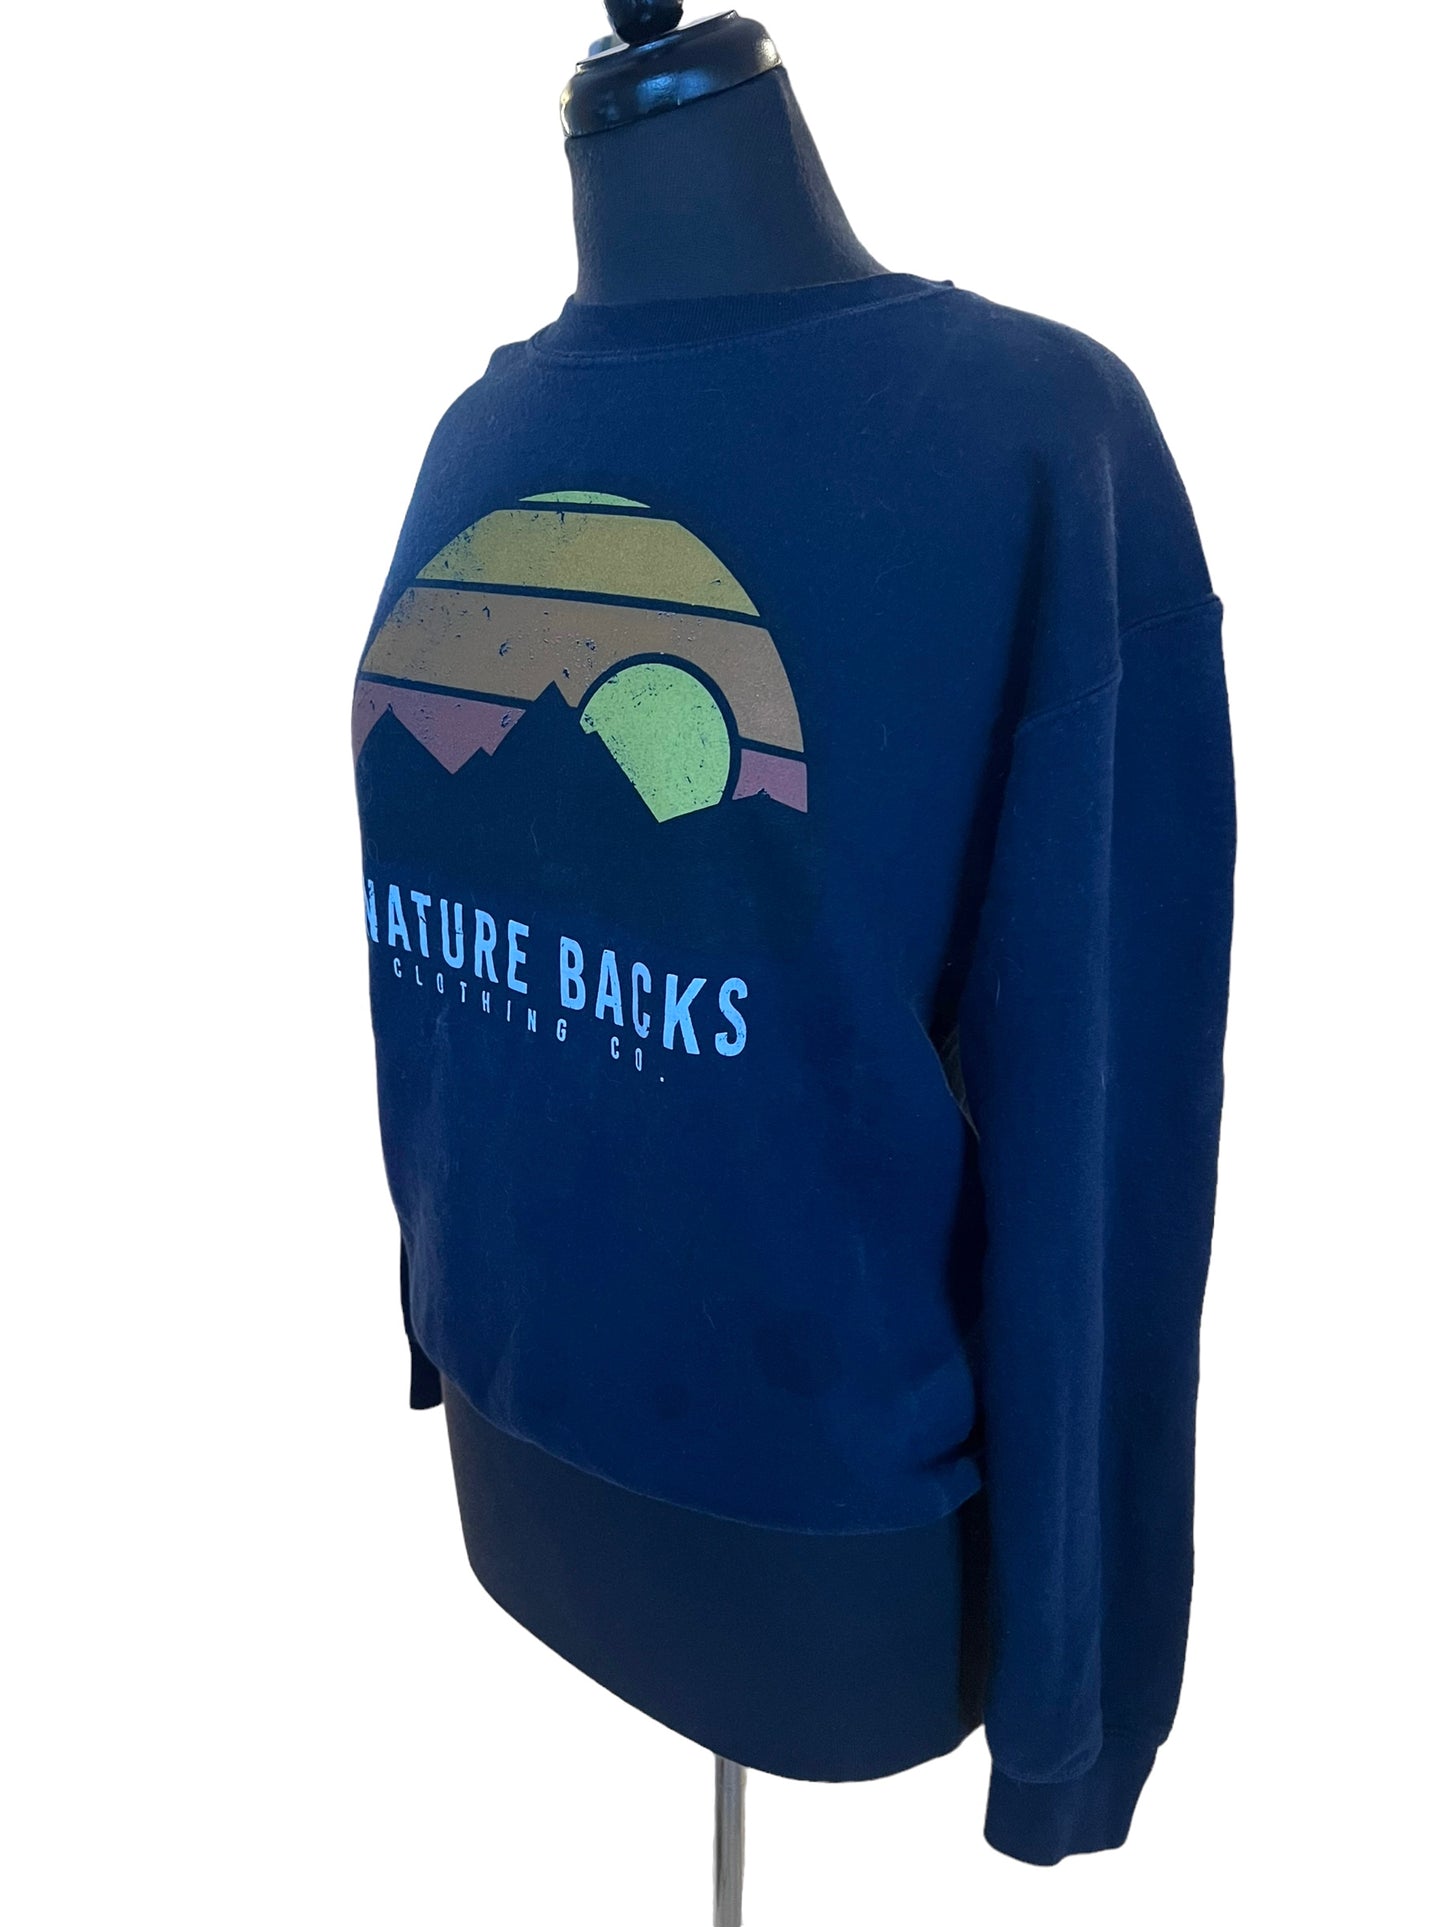 Nature Backs Clothing Co Sweater